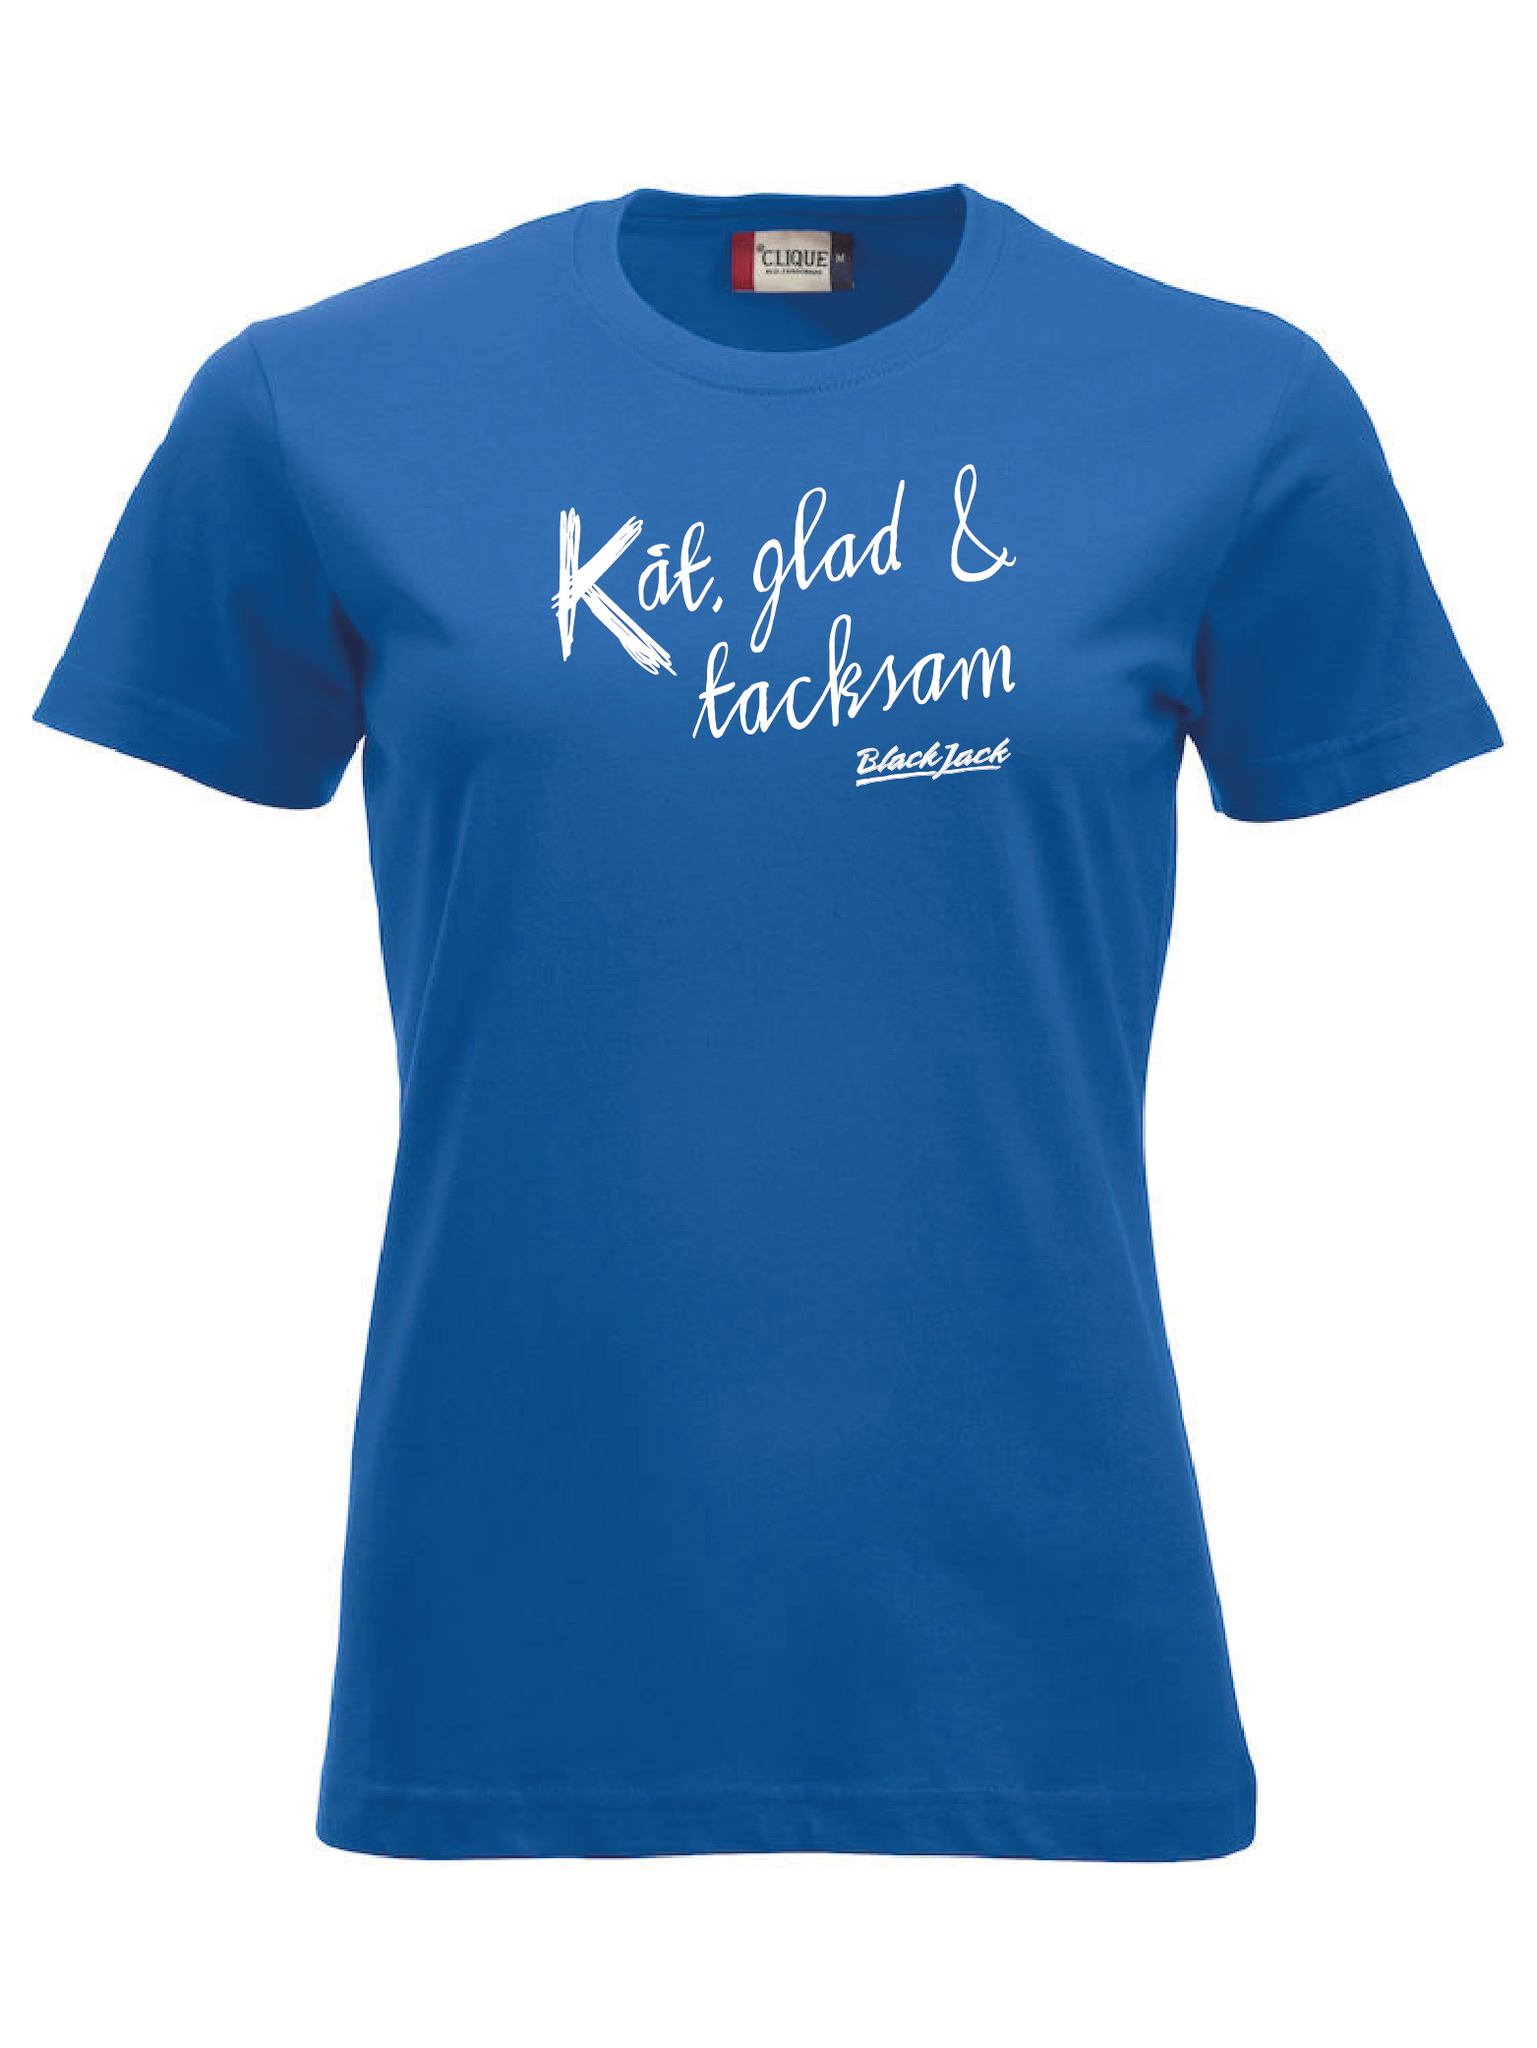 Blå Dam T-shirt "Black Jack Kåt, glad & tacksam"